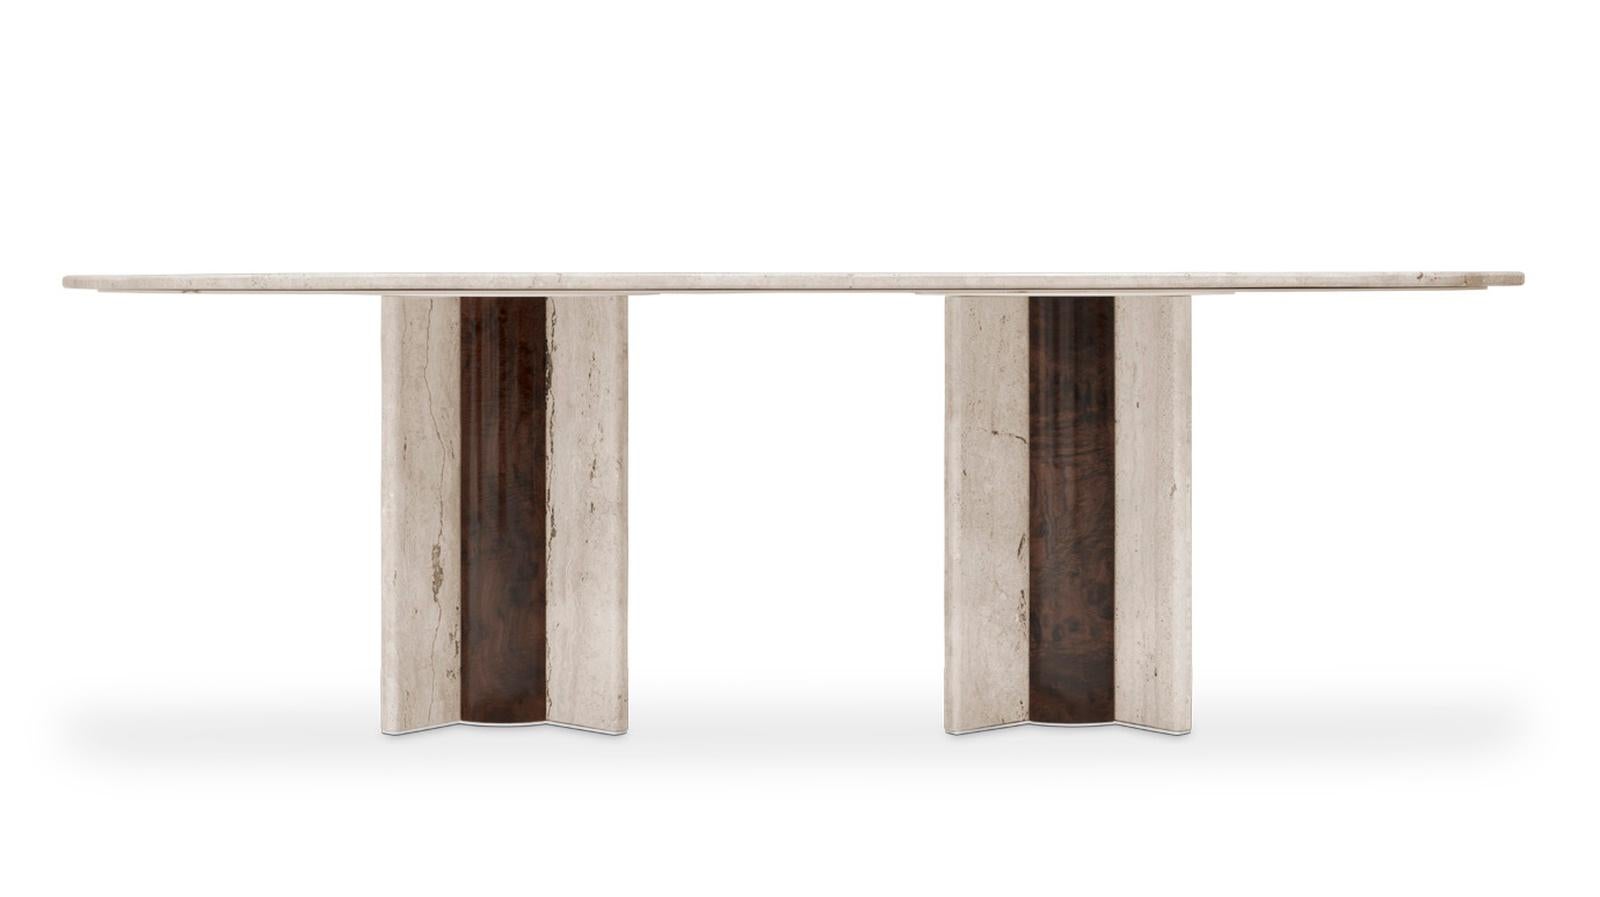 Ovaler Esstisch aus Travertin „Coloss“

Dieser Esstisch ist ein außergewöhnliches Stück. Aus Travertin gefertigt und mit einem großen Format, wird es eine bemerkenswerte Dekoration für Ihr Esszimmer sein. Alle Details sind in Nussbaumwurzelfurnier